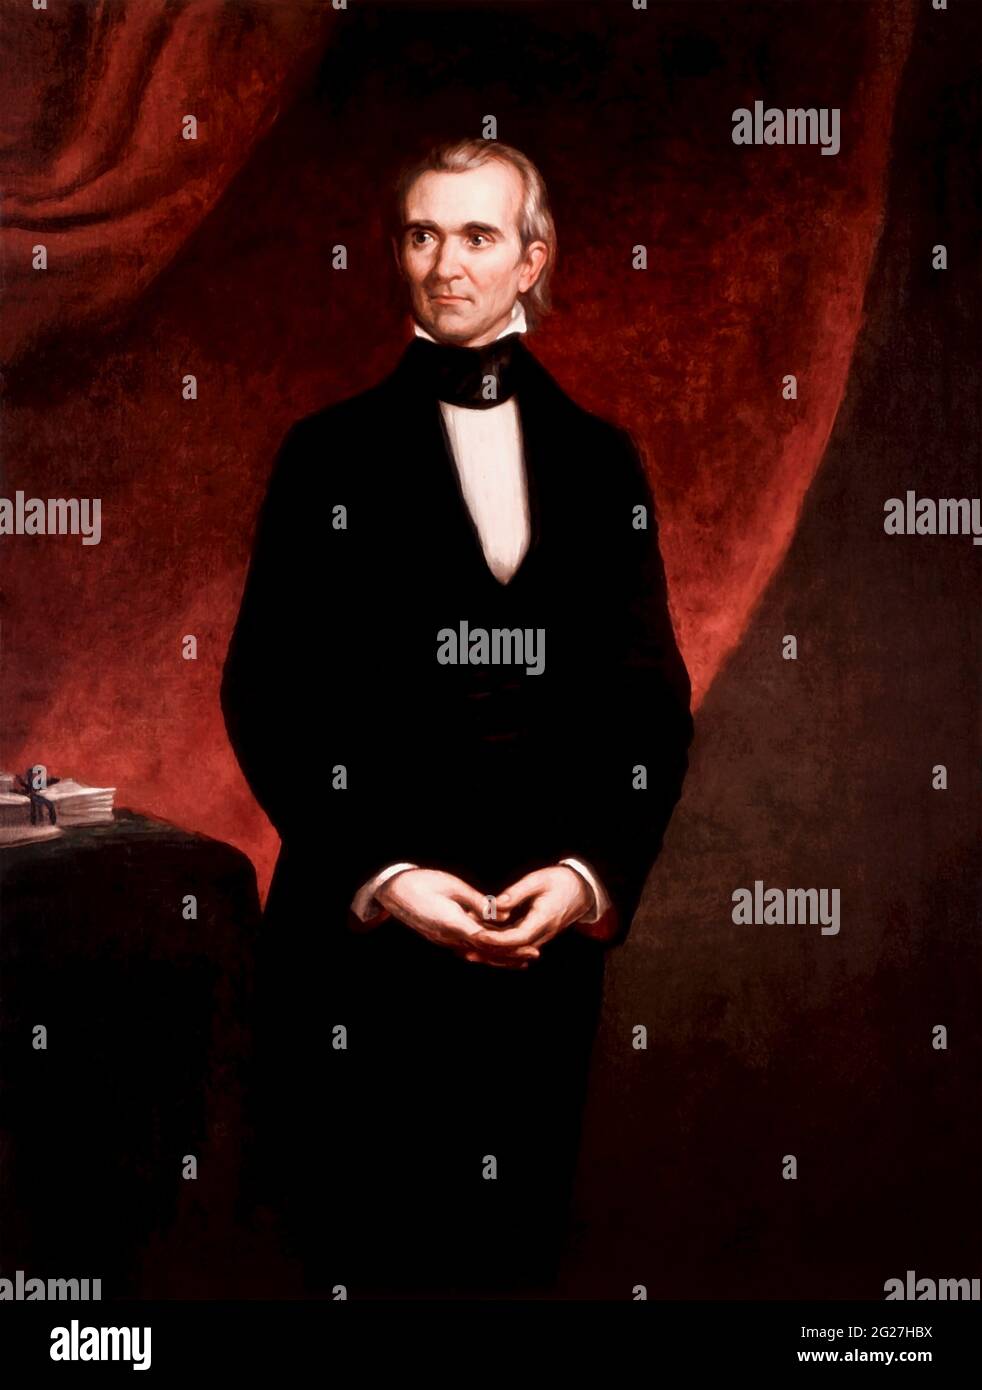 Portrait de James KNOX Polk, 11e président des États-Unis qui a occupé son poste de 1845 à 1849. Banque D'Images